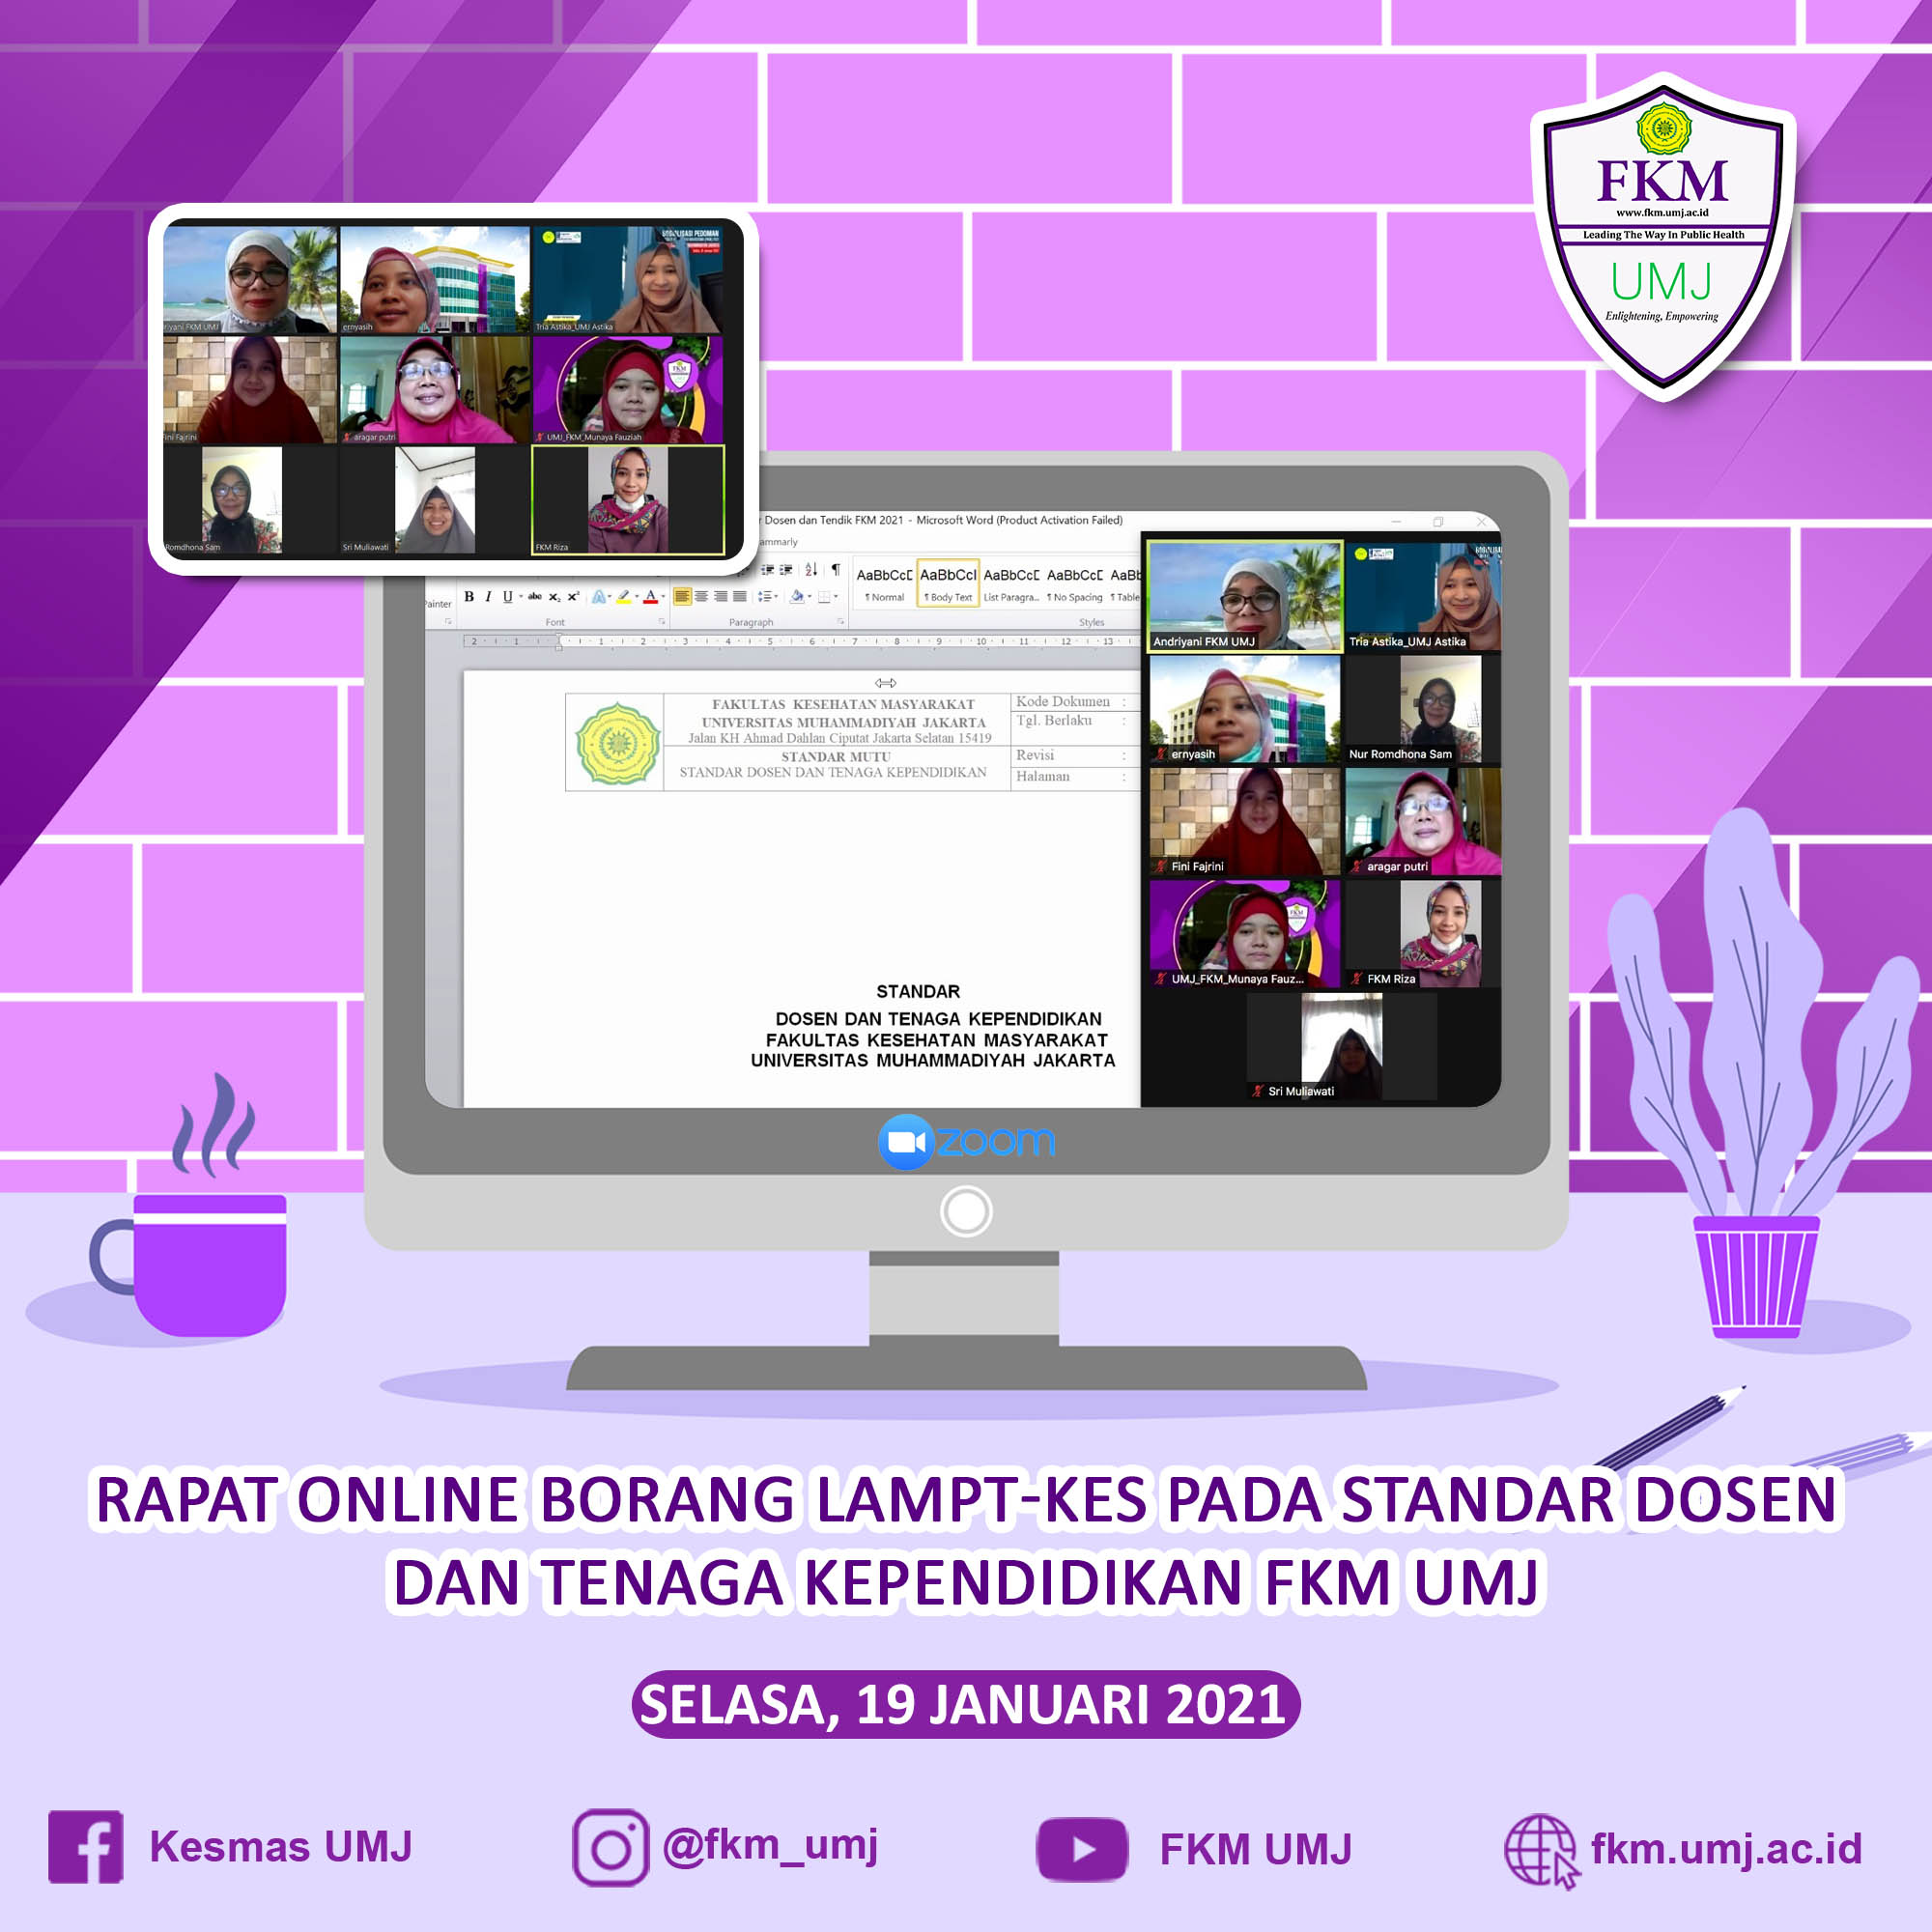 Rapat Online Borang Lampt-Kes pada Standar Standar Mutu Fakultas Kesehatan Masyarakat Universitas Muhammadiyah Jakarta